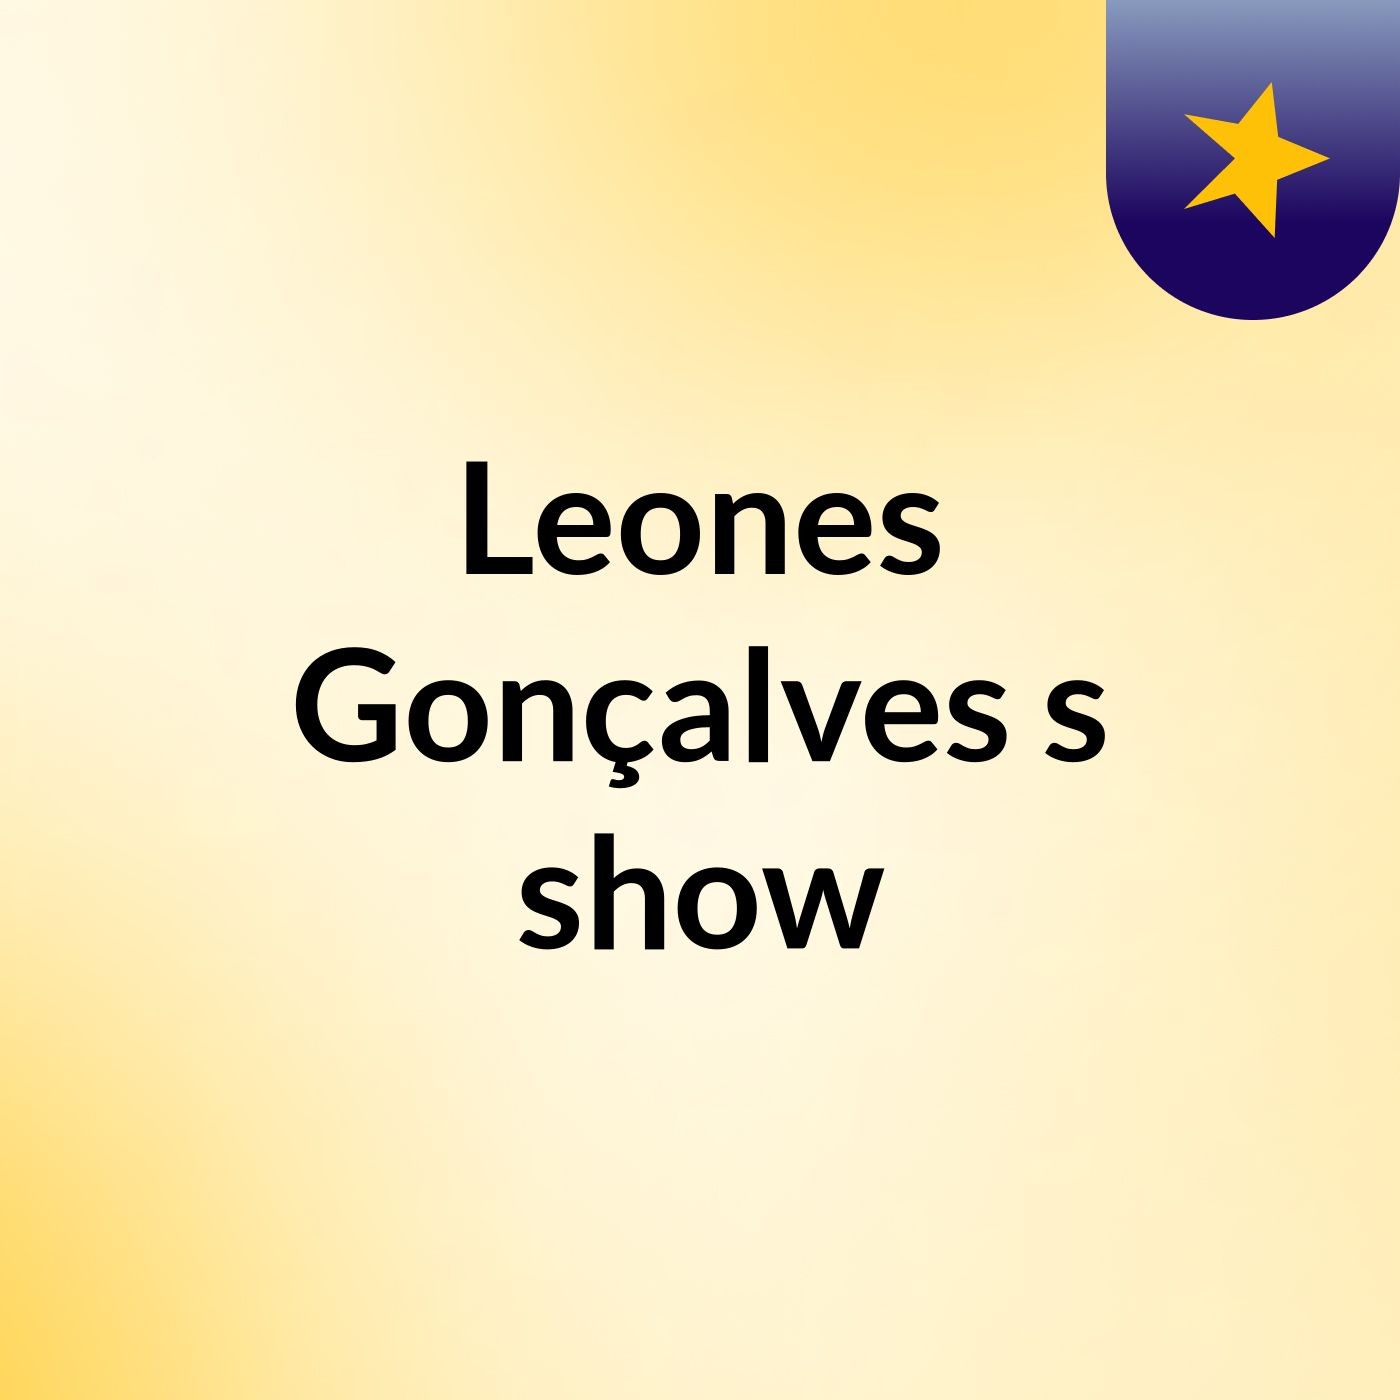 Leones Gonçalves's show